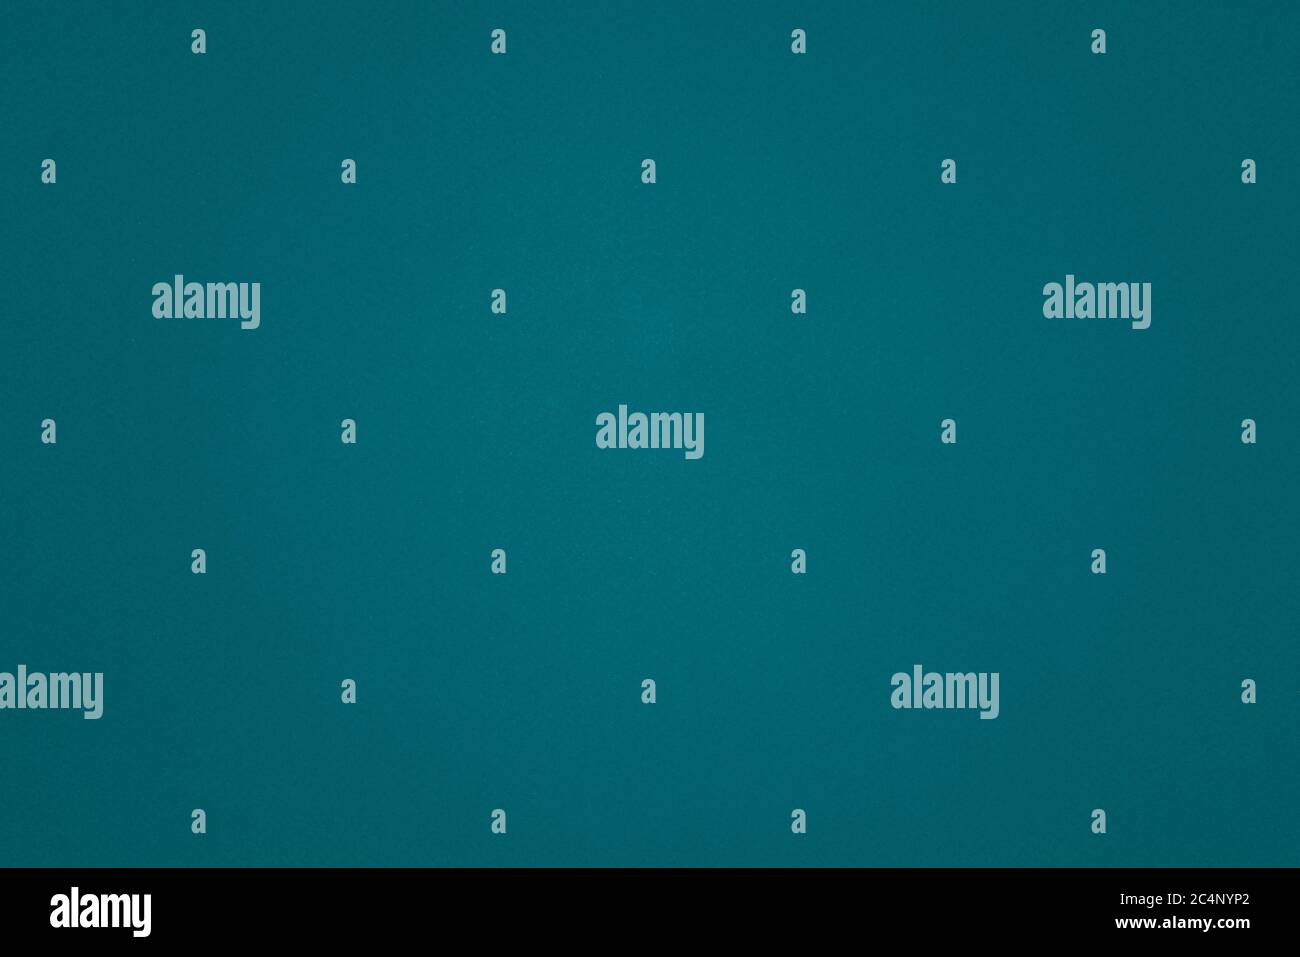 Blu verdastro immagini e fotografie stock ad alta risoluzione - Alamy